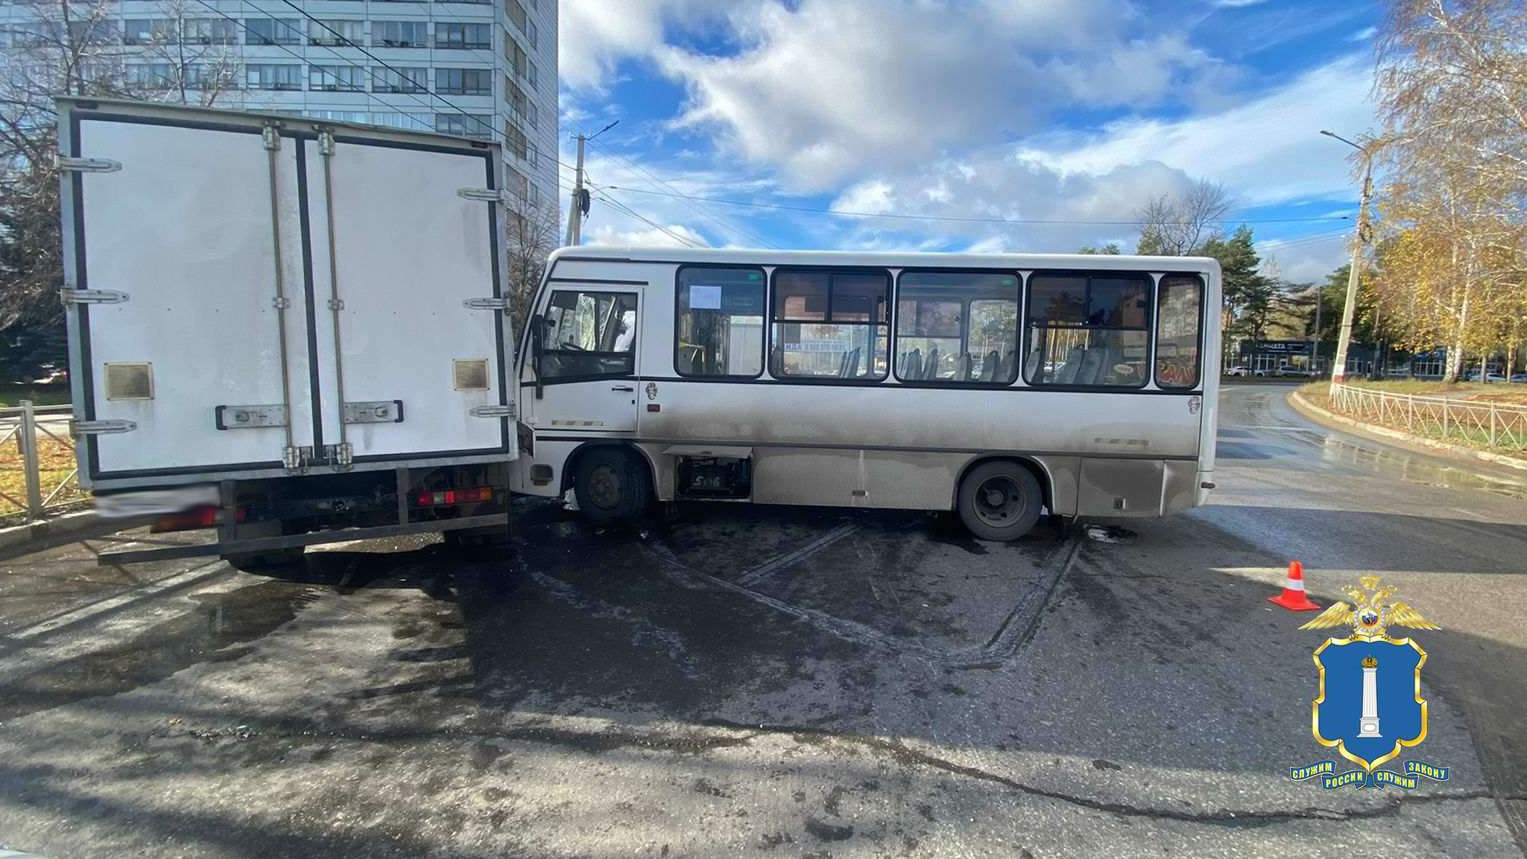 Прокуратура Димитровграда начала проверку по факту ДТП с автобусом, где пострадали 6 человек